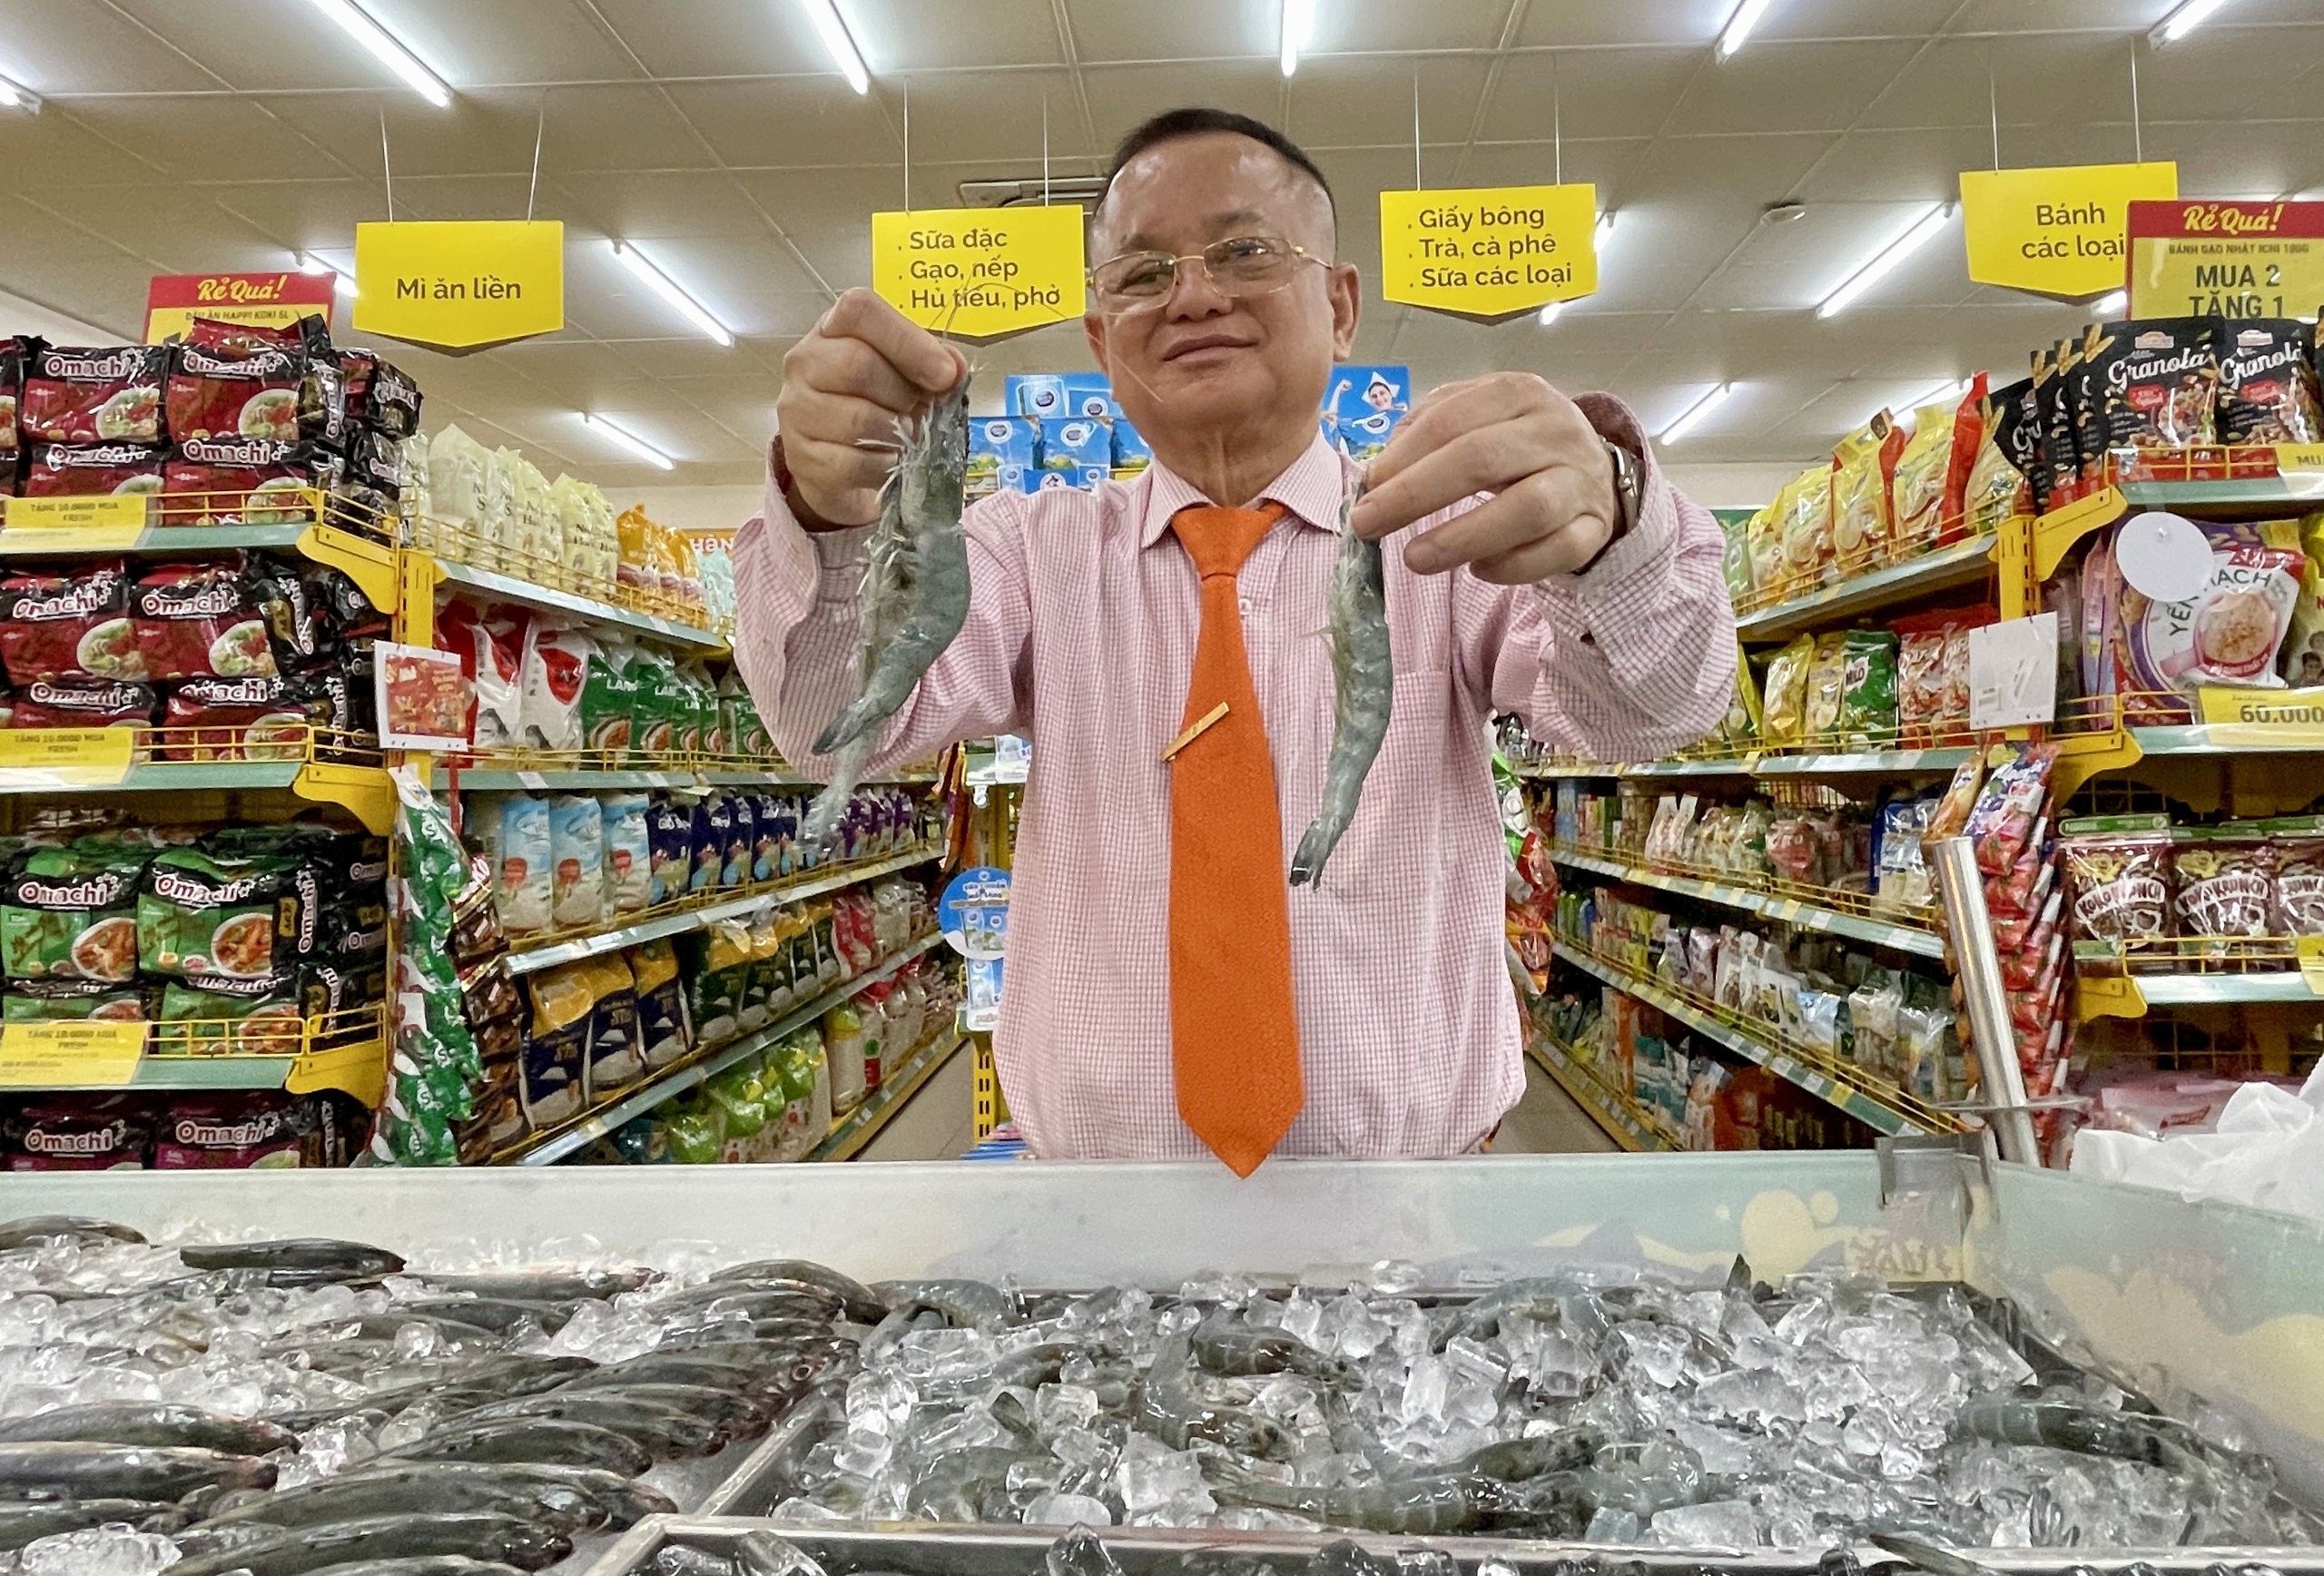 “Vua tôm” Minh Phú đưa tôm tiêu chuẩn xuất khẩu Mỹ, EU vào siêu thị với giá bất ngờ- Ảnh 1.